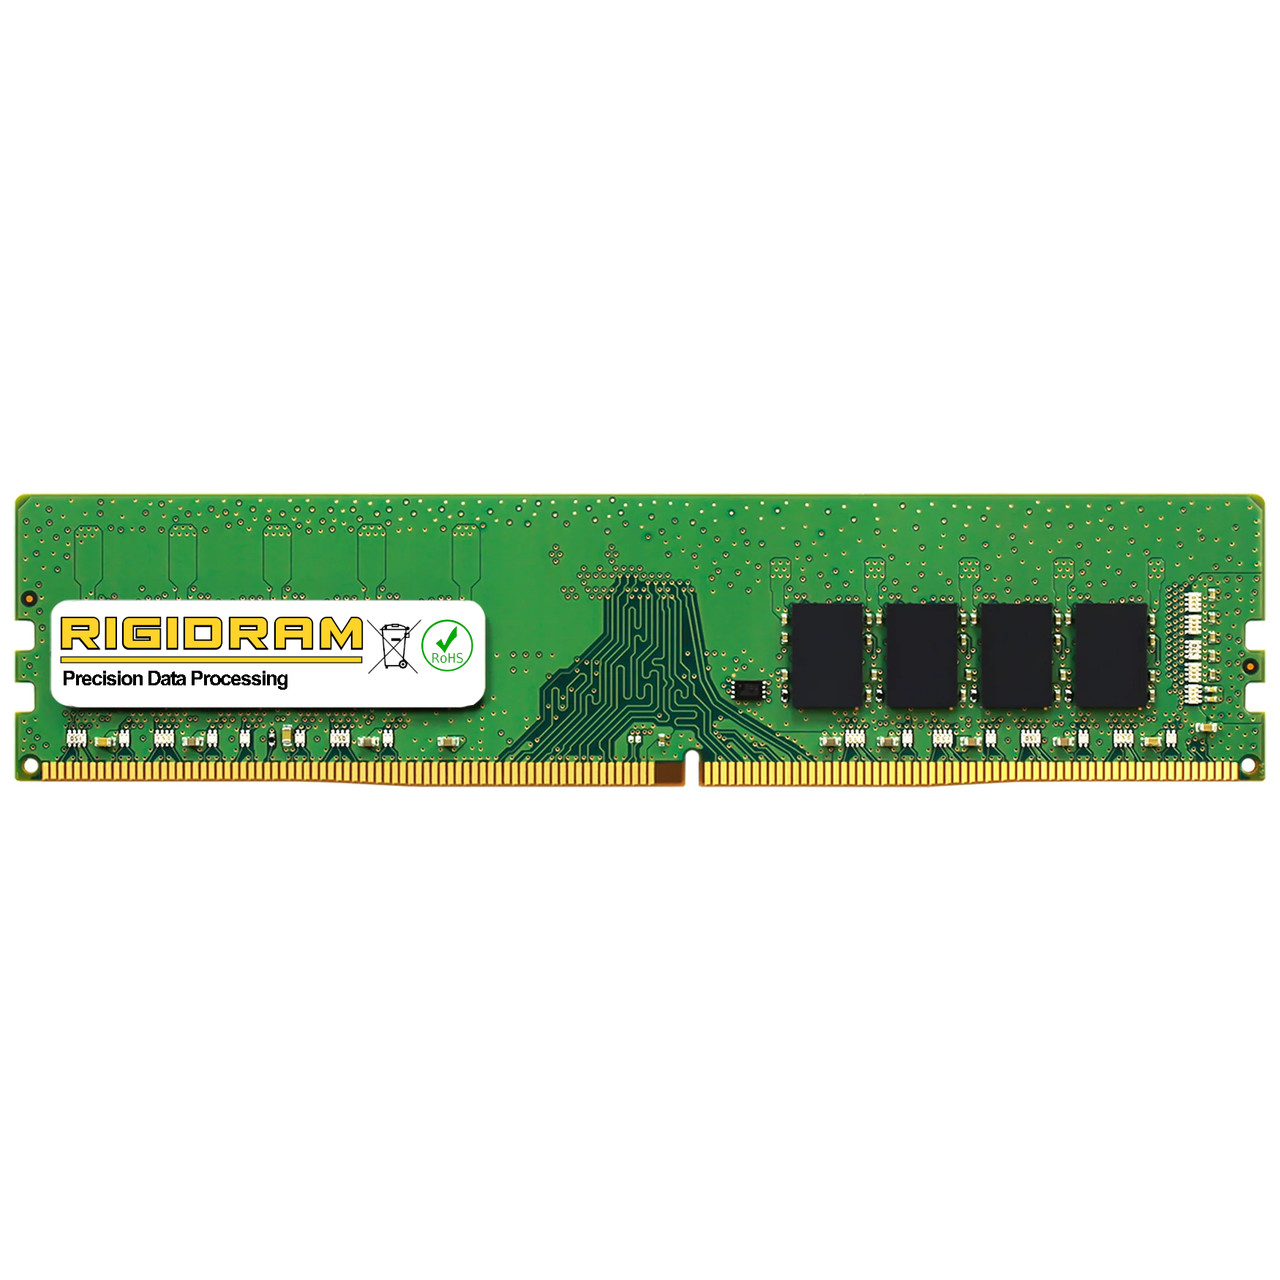 eBay*8GB HP Pro 300 G6 DDR4 3200MHz UDIMM Memory RAM Upgrade